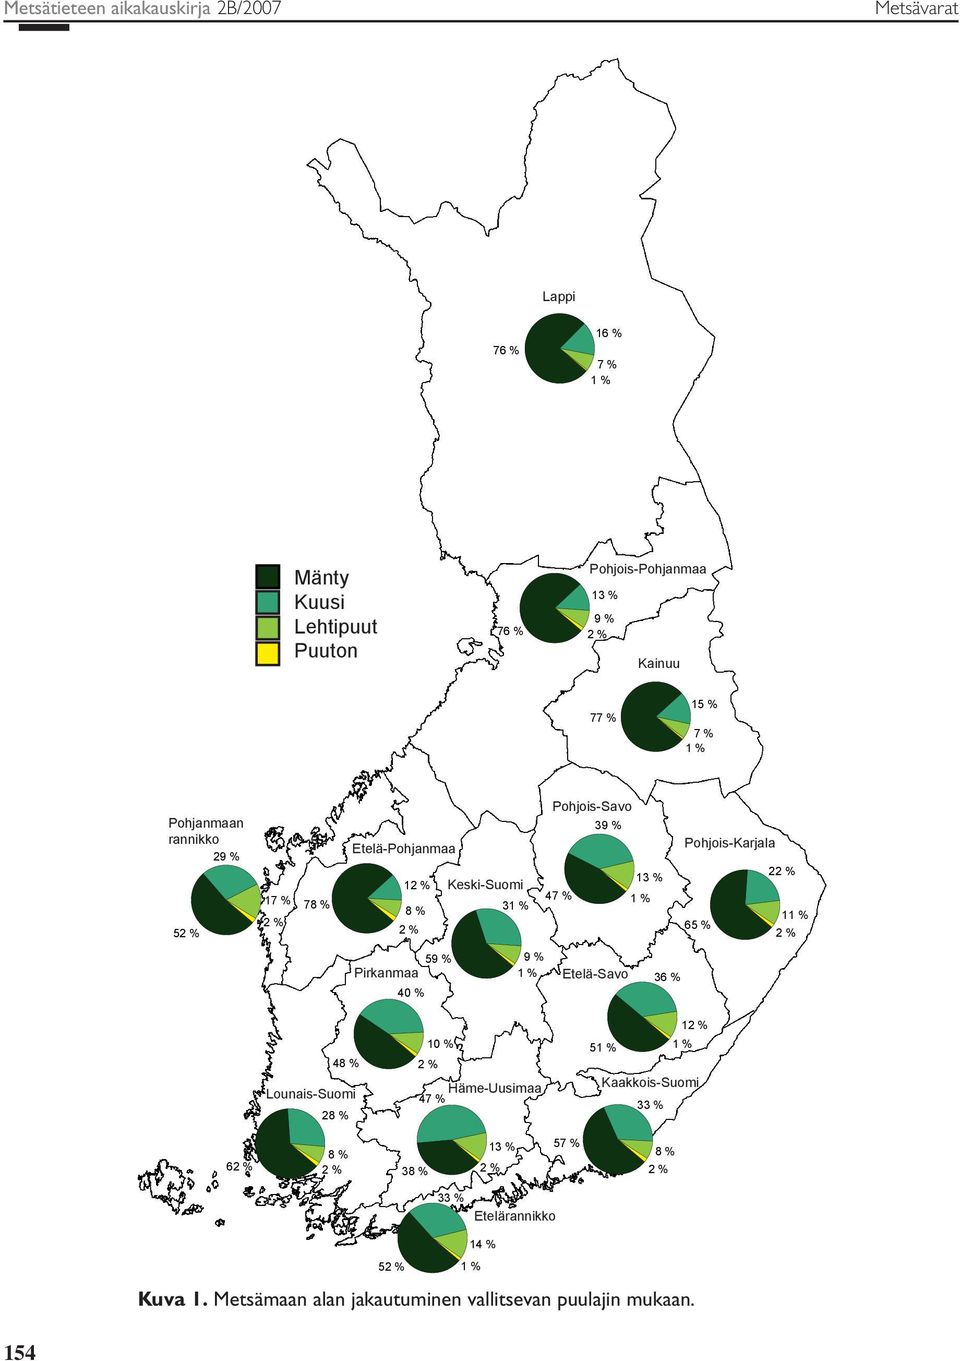 Pohjois-Karjala 22 % 11 % 65 % 2 % 59 % Pirkanmaa 4 % 9 % 1 % Etelä-Savo 36 % 12 % 48 % Lounais-Suomi 28 % 1 % 2 % Häme-Uusimaa 47 % 51 % 1 %